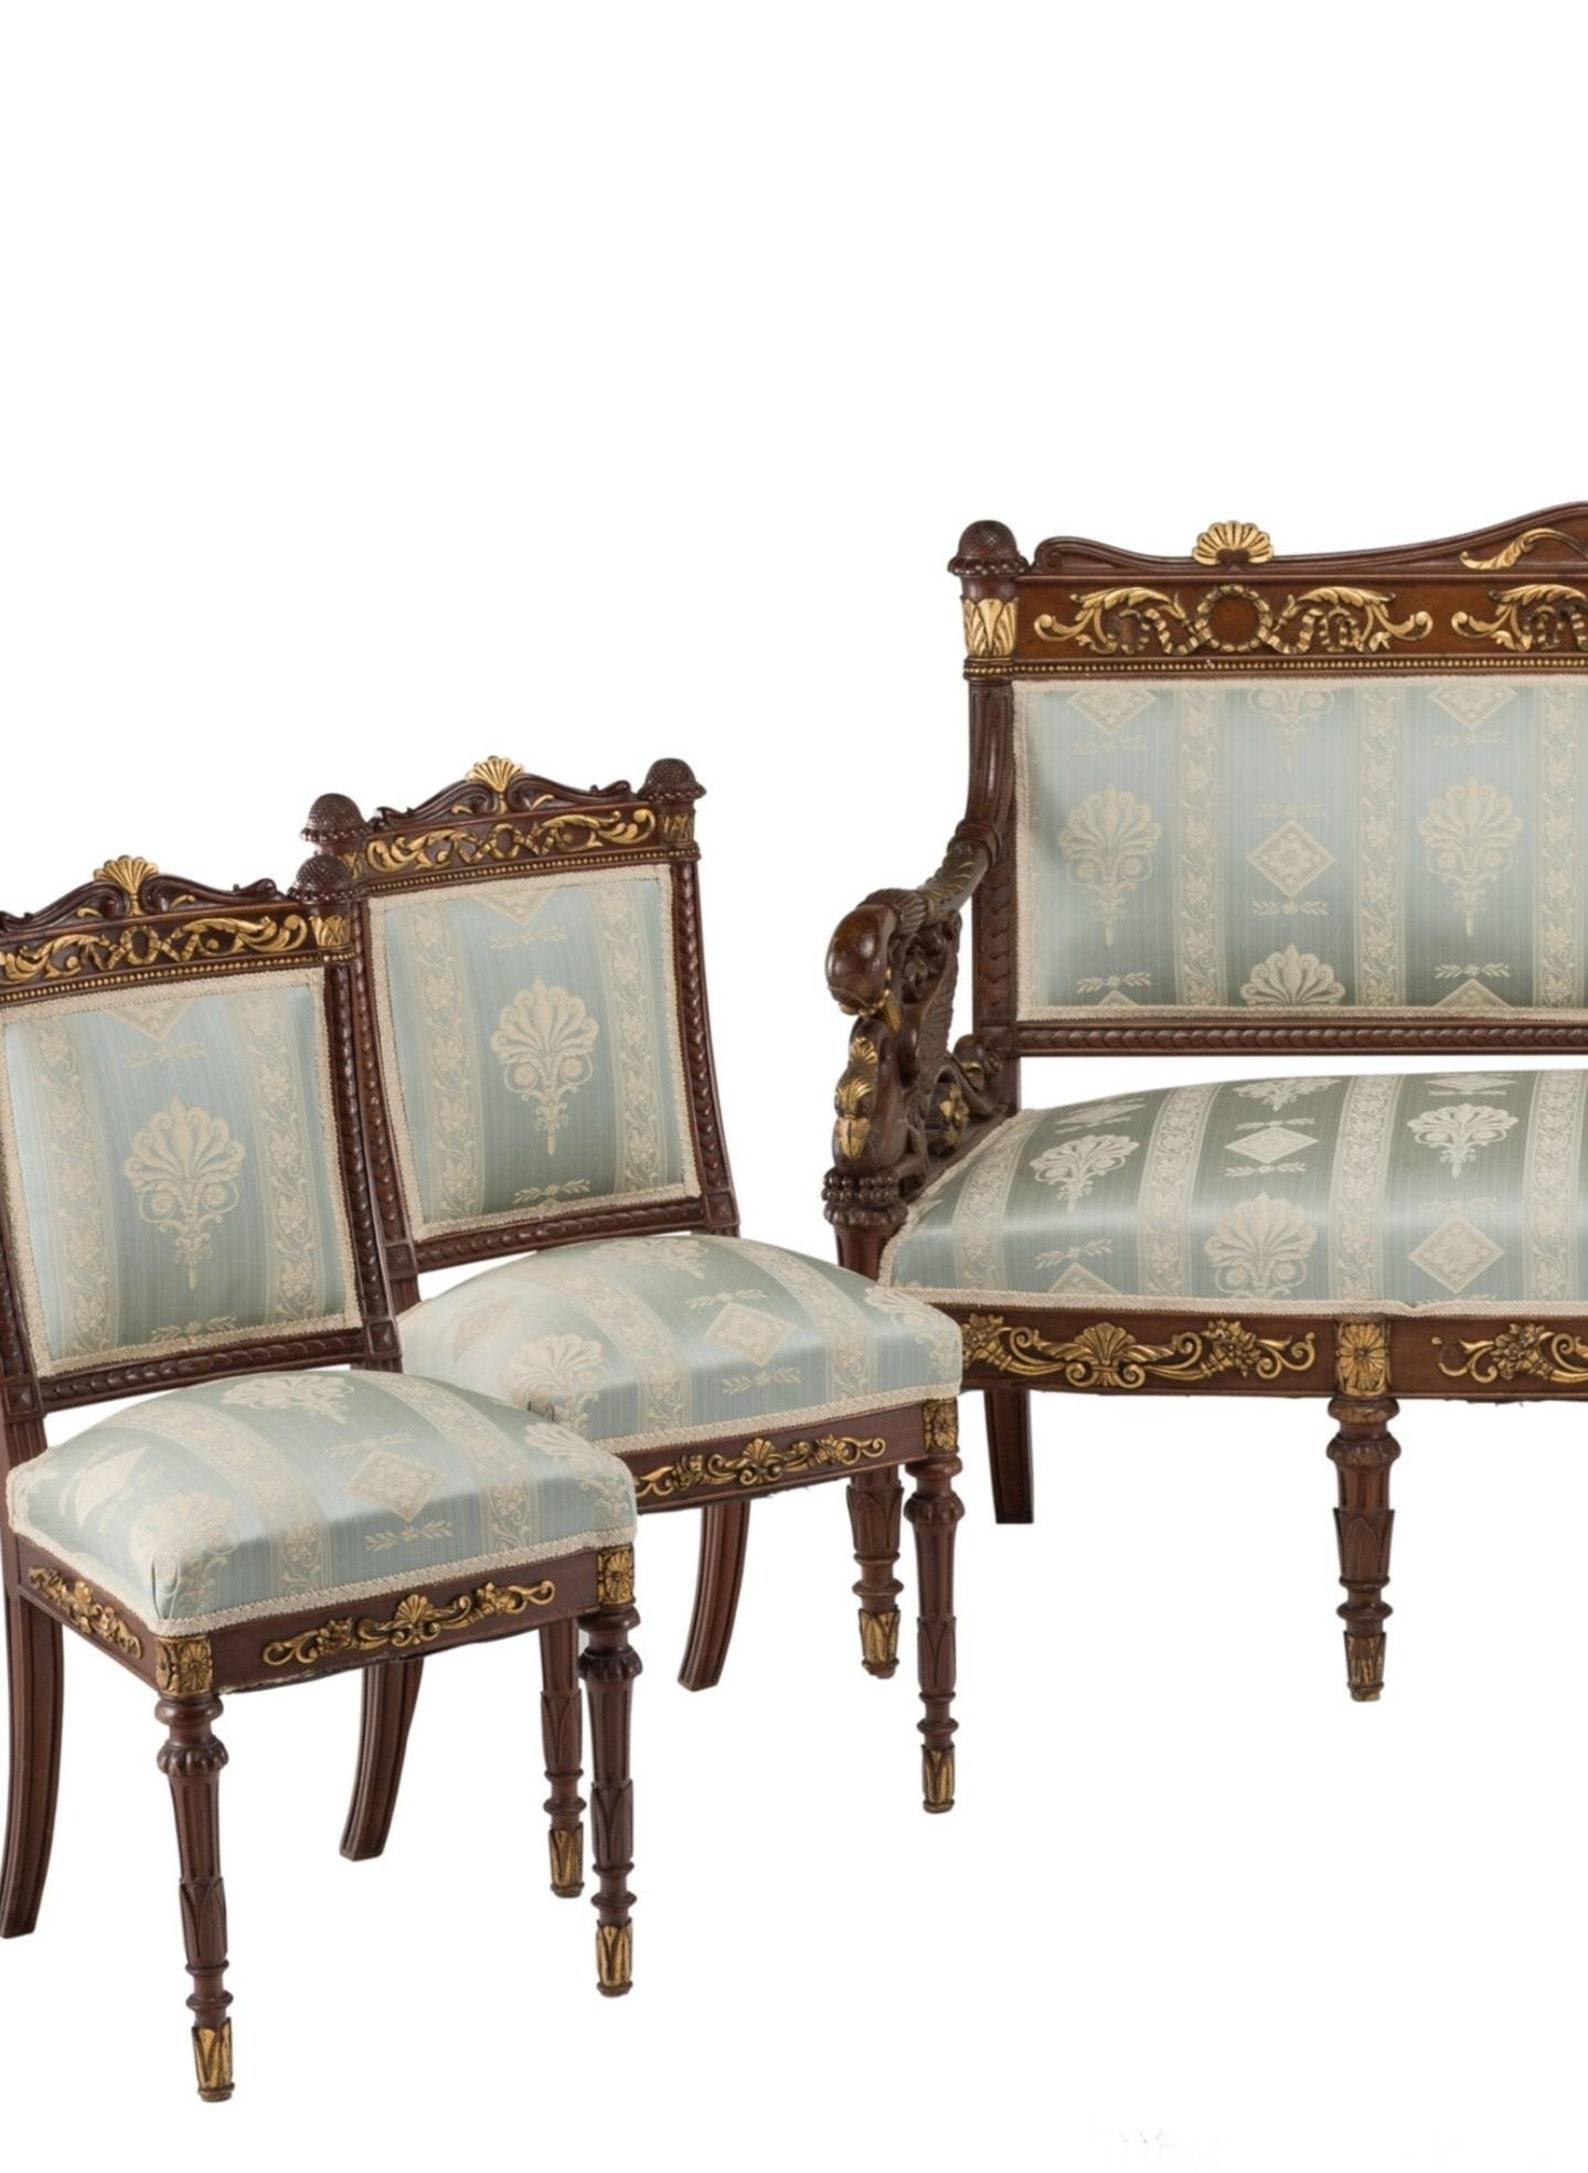 19th Century Russian Empire Period Neoclassical Salon Suite For Sale 2